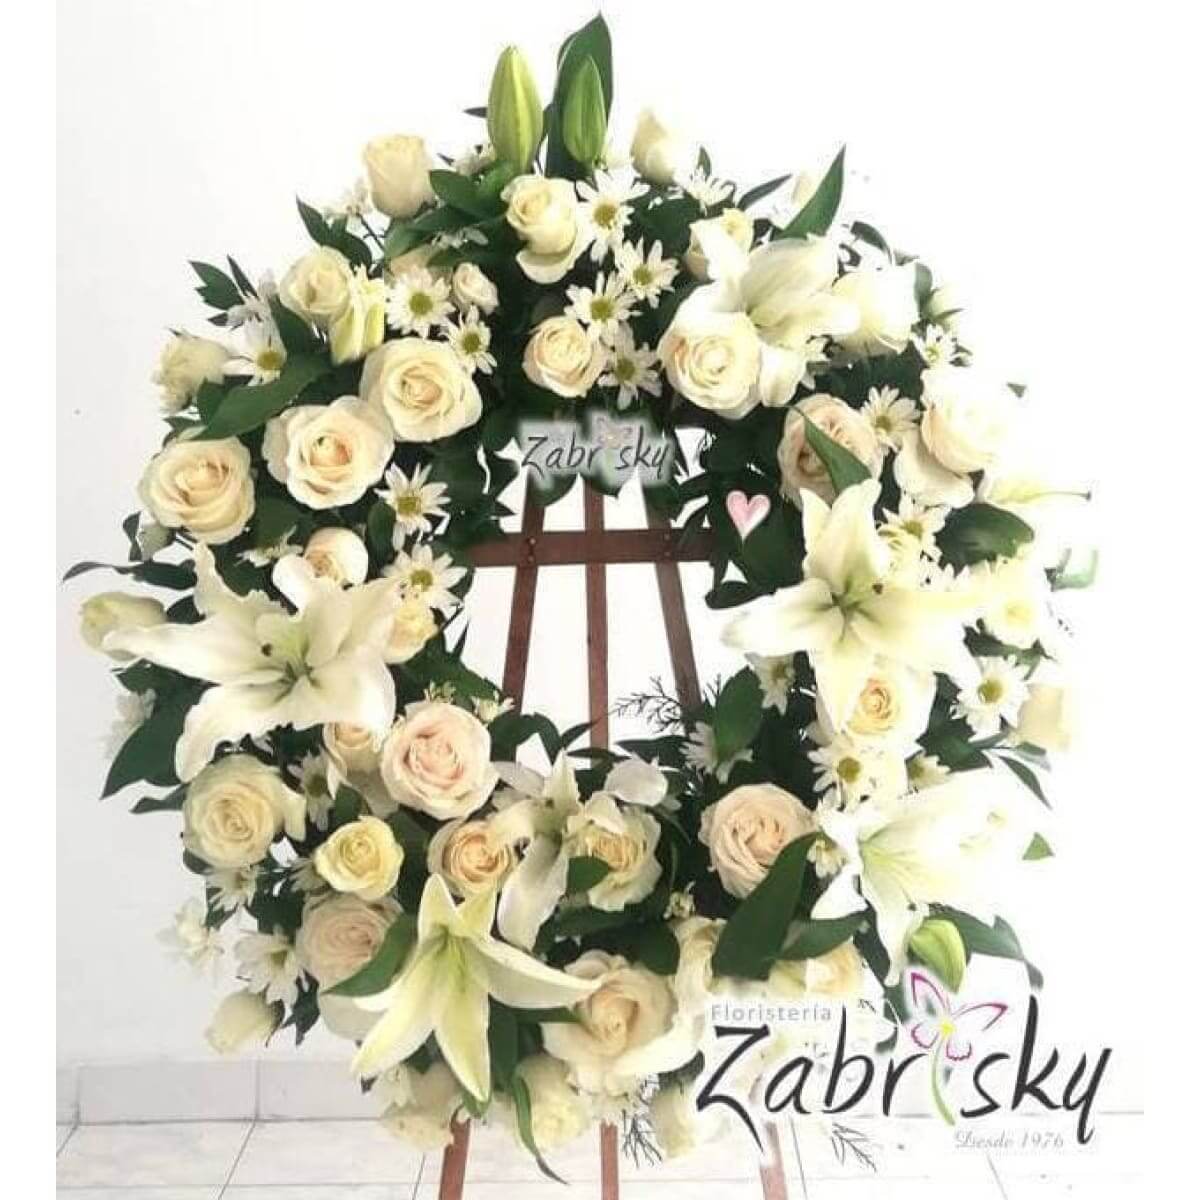 Ofrenda - Condolencias Rosas Blancas - Floristería Zabrisky